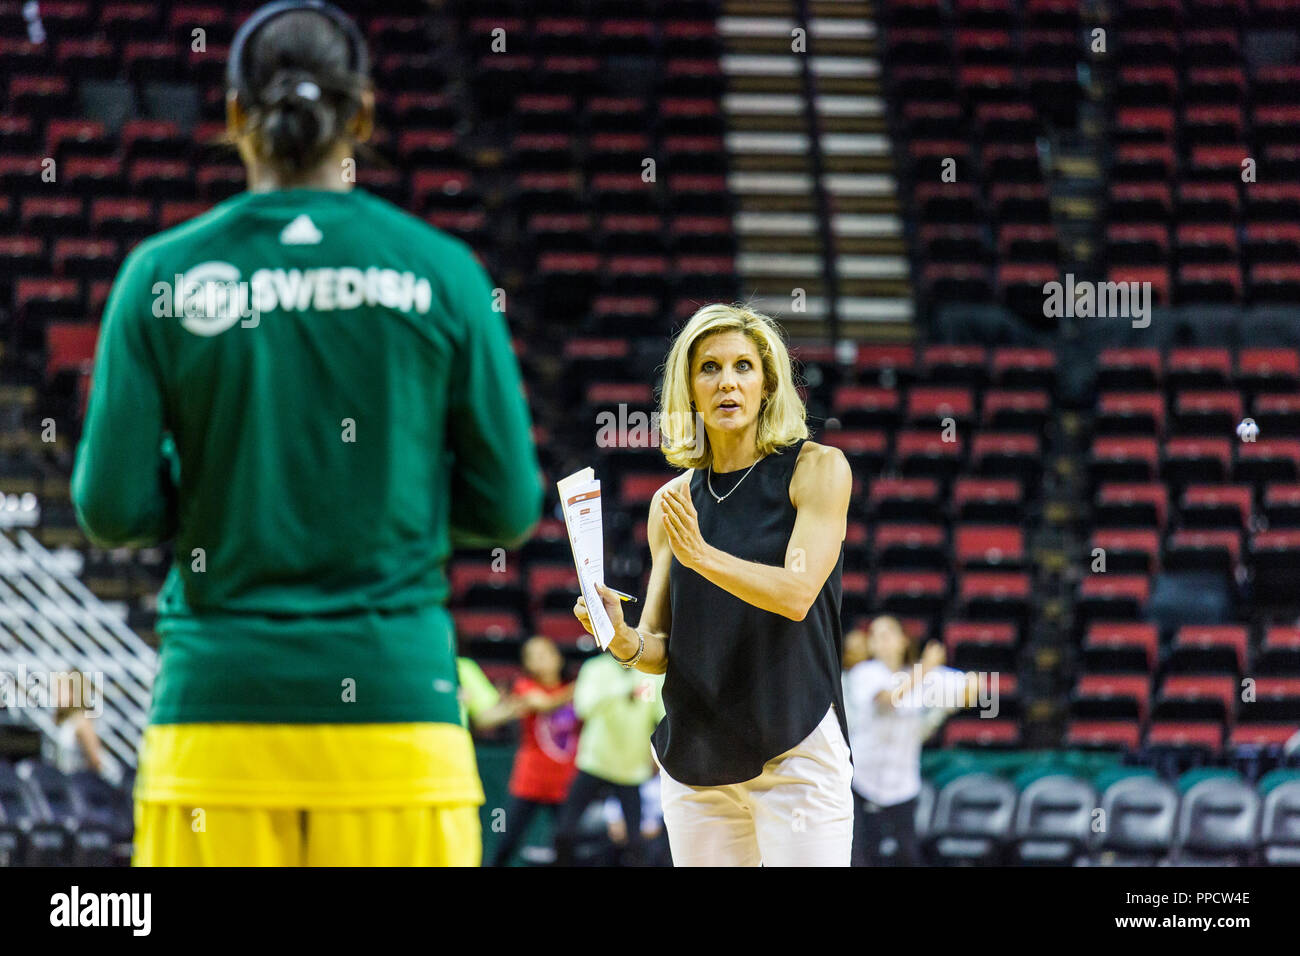 Testa femmina pullman a parlare con il giocatore prima del gioco del basket, Seattle, Washington, Stati Uniti d'America Foto Stock